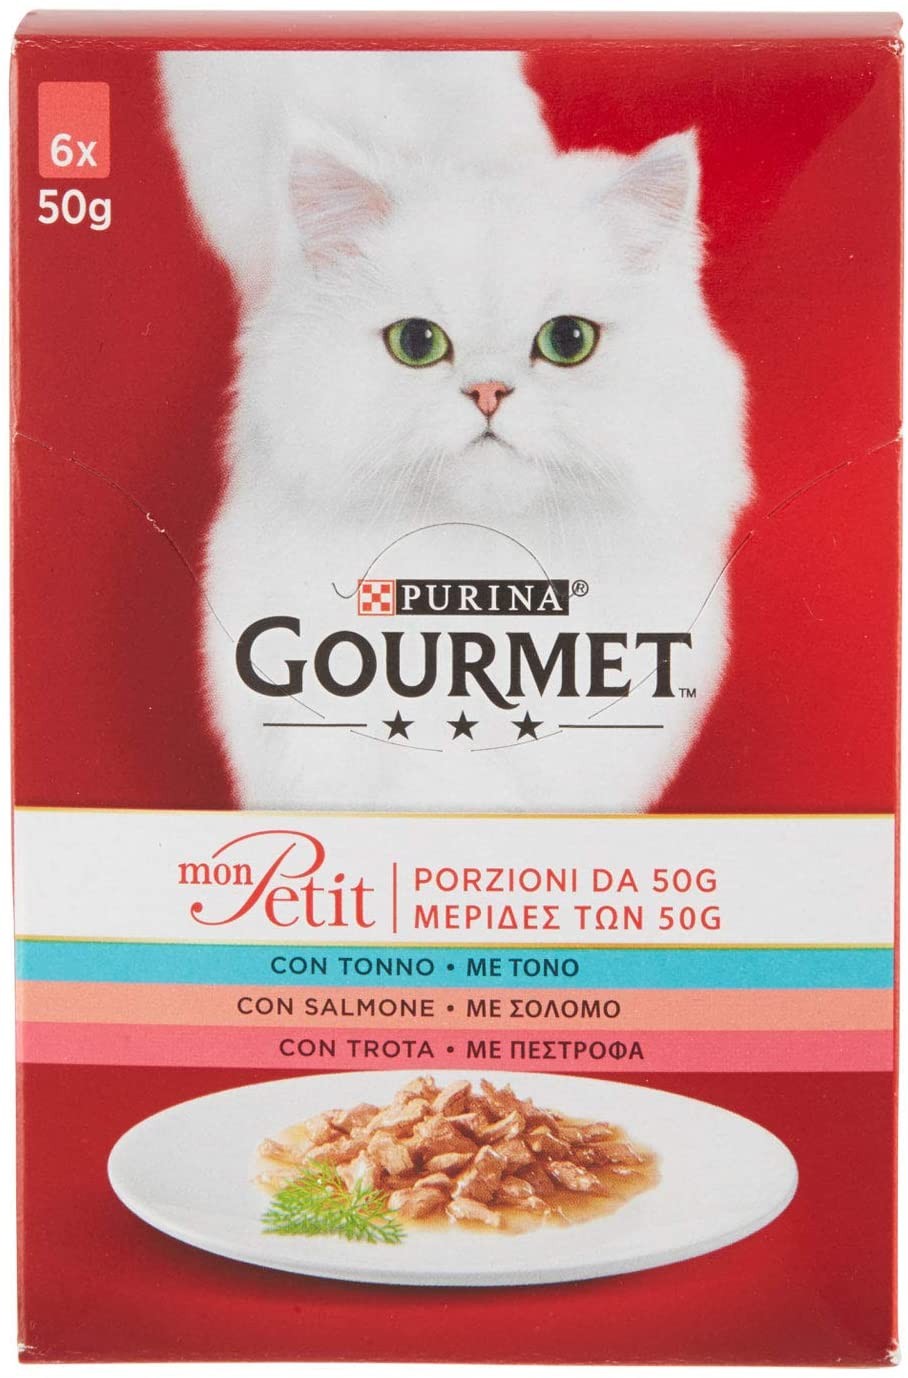 Purina Gourmet Mon Petit Cibo per Gatti con Tonno, Salmone e Trota, 6 x 50g